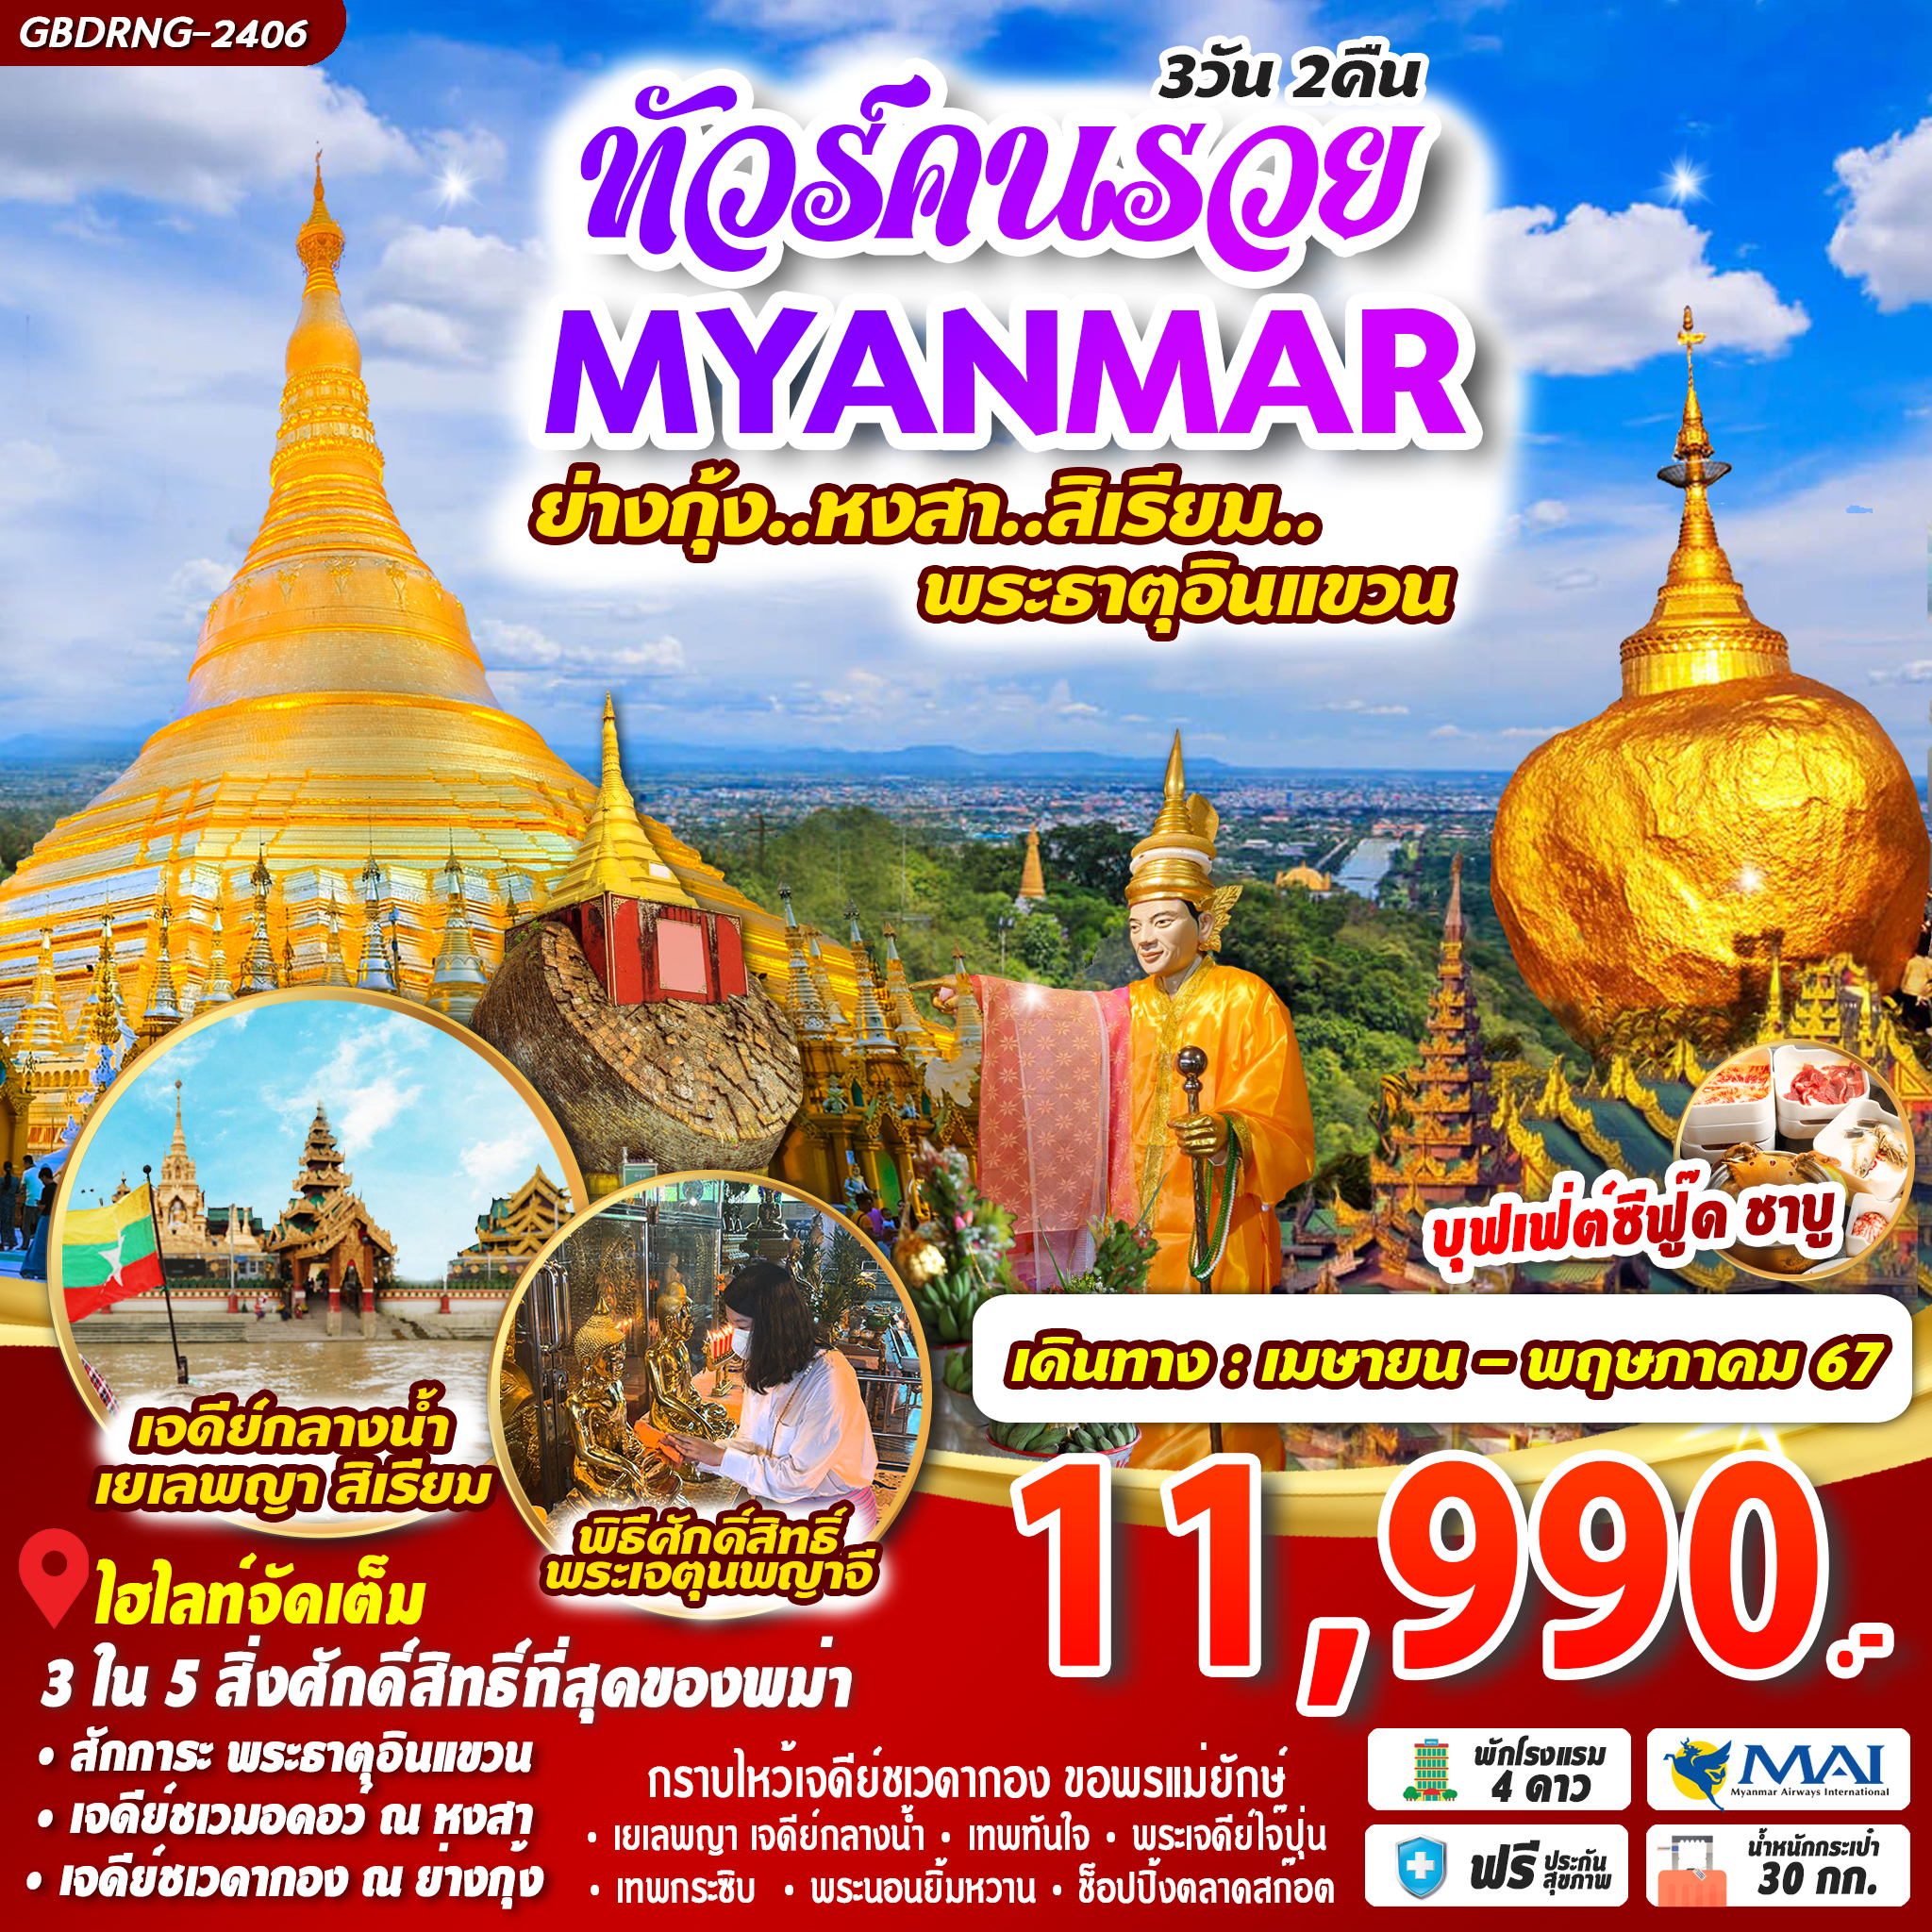 Myanmar ย่างกุ้ง หงสาวดี อินแขวน 3D2N by 8M